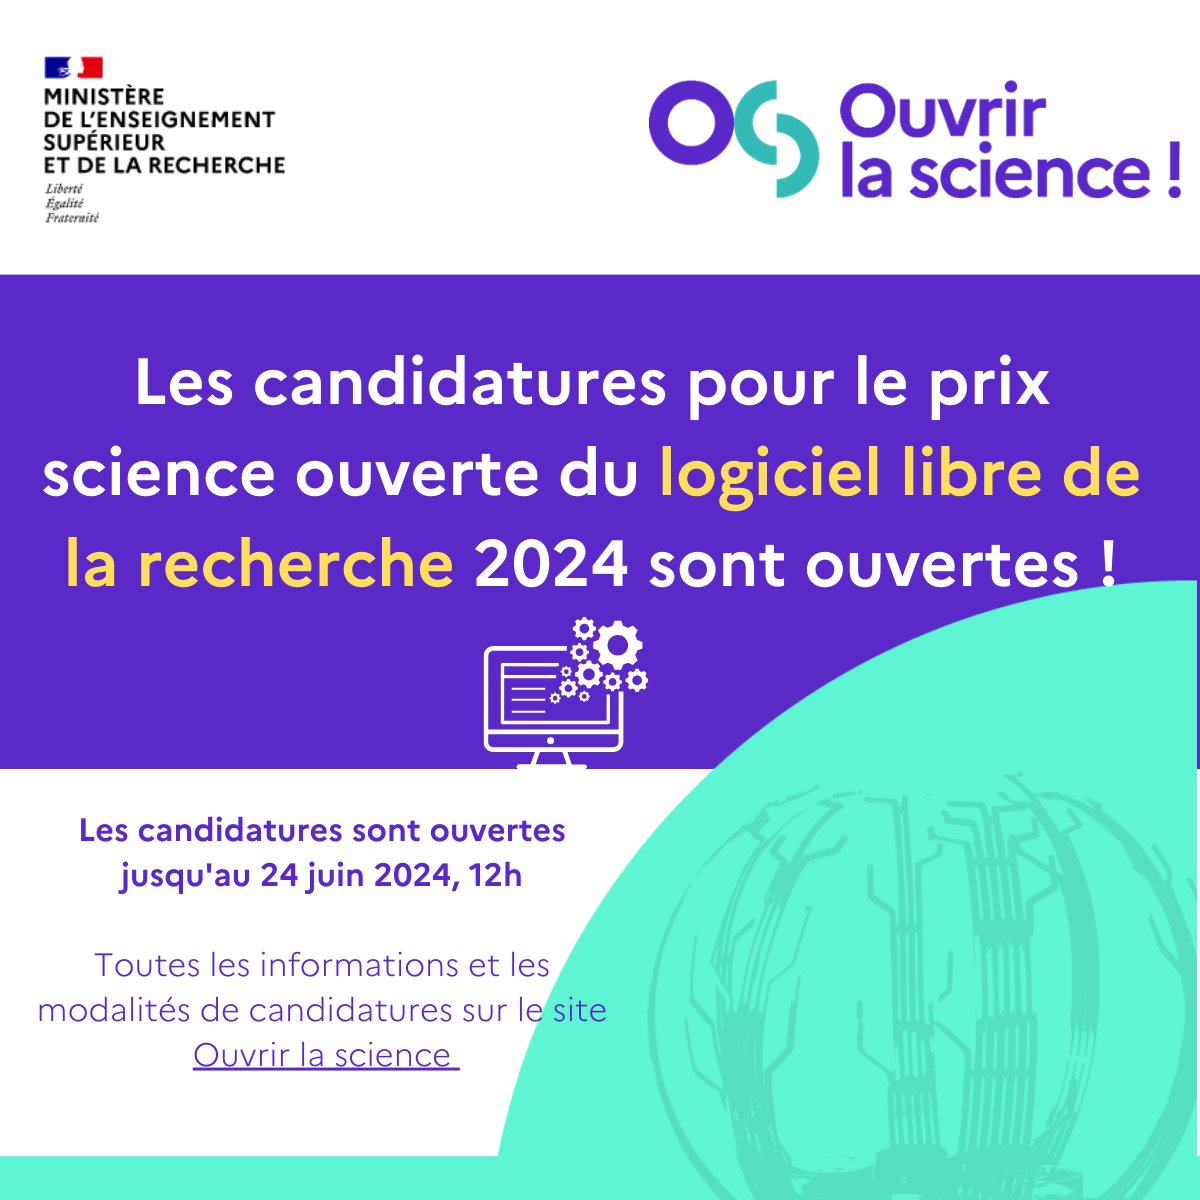 Candidatez pour le prix #scienceouverte du #logiciellibre de la recherche 2024 jusqu'au 24 juin 2024 ! ouvrirlascience.fr/les-candidatur…